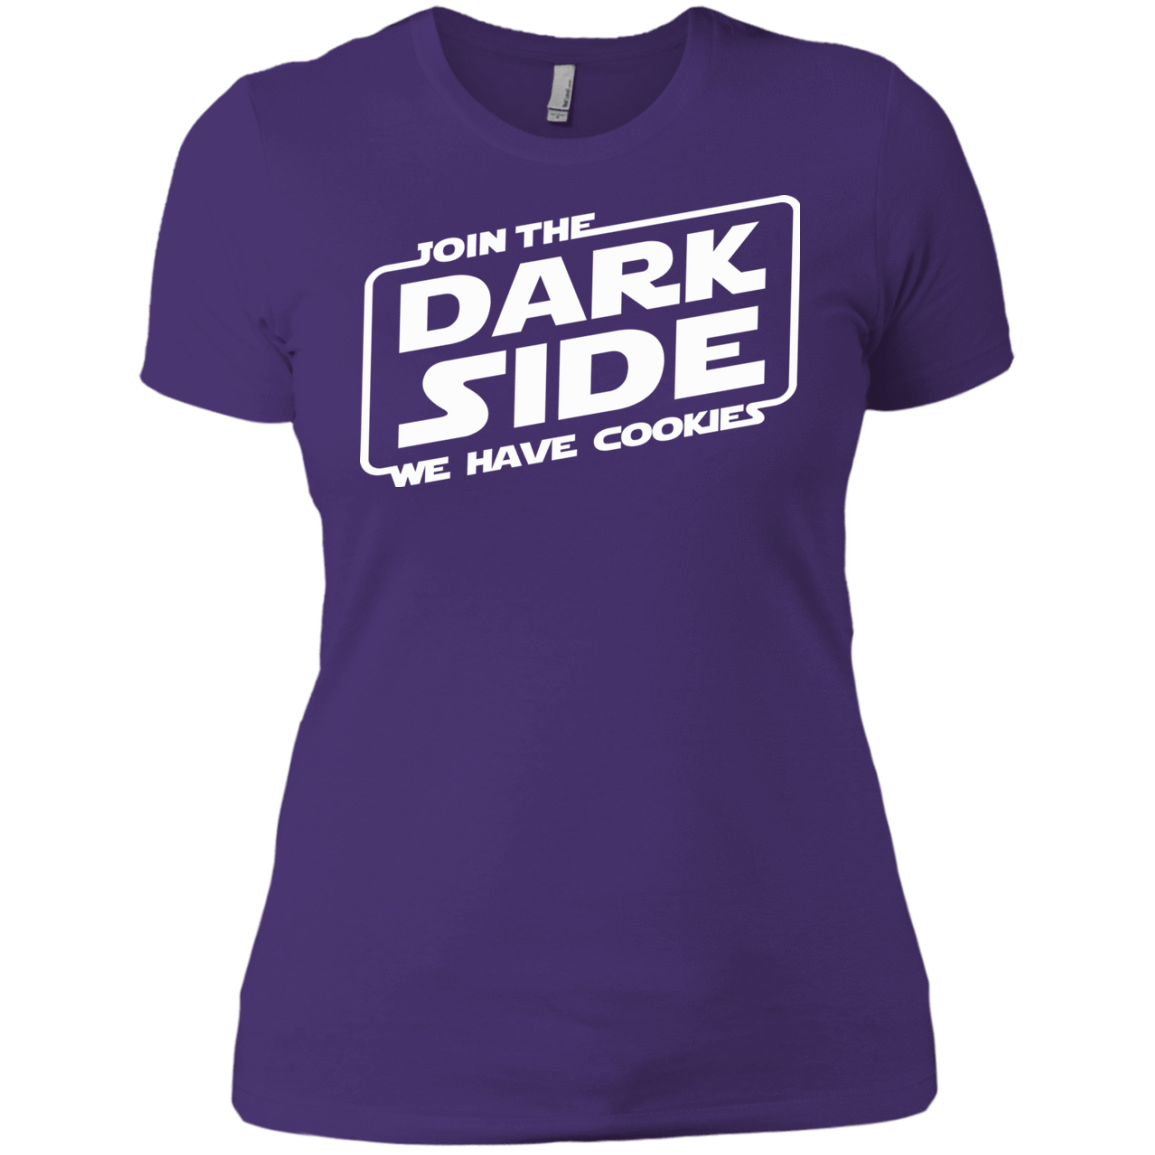 T-Shirts Purple Rush/ / X-Small Join The Dark Side Women's Premium T-Shirt